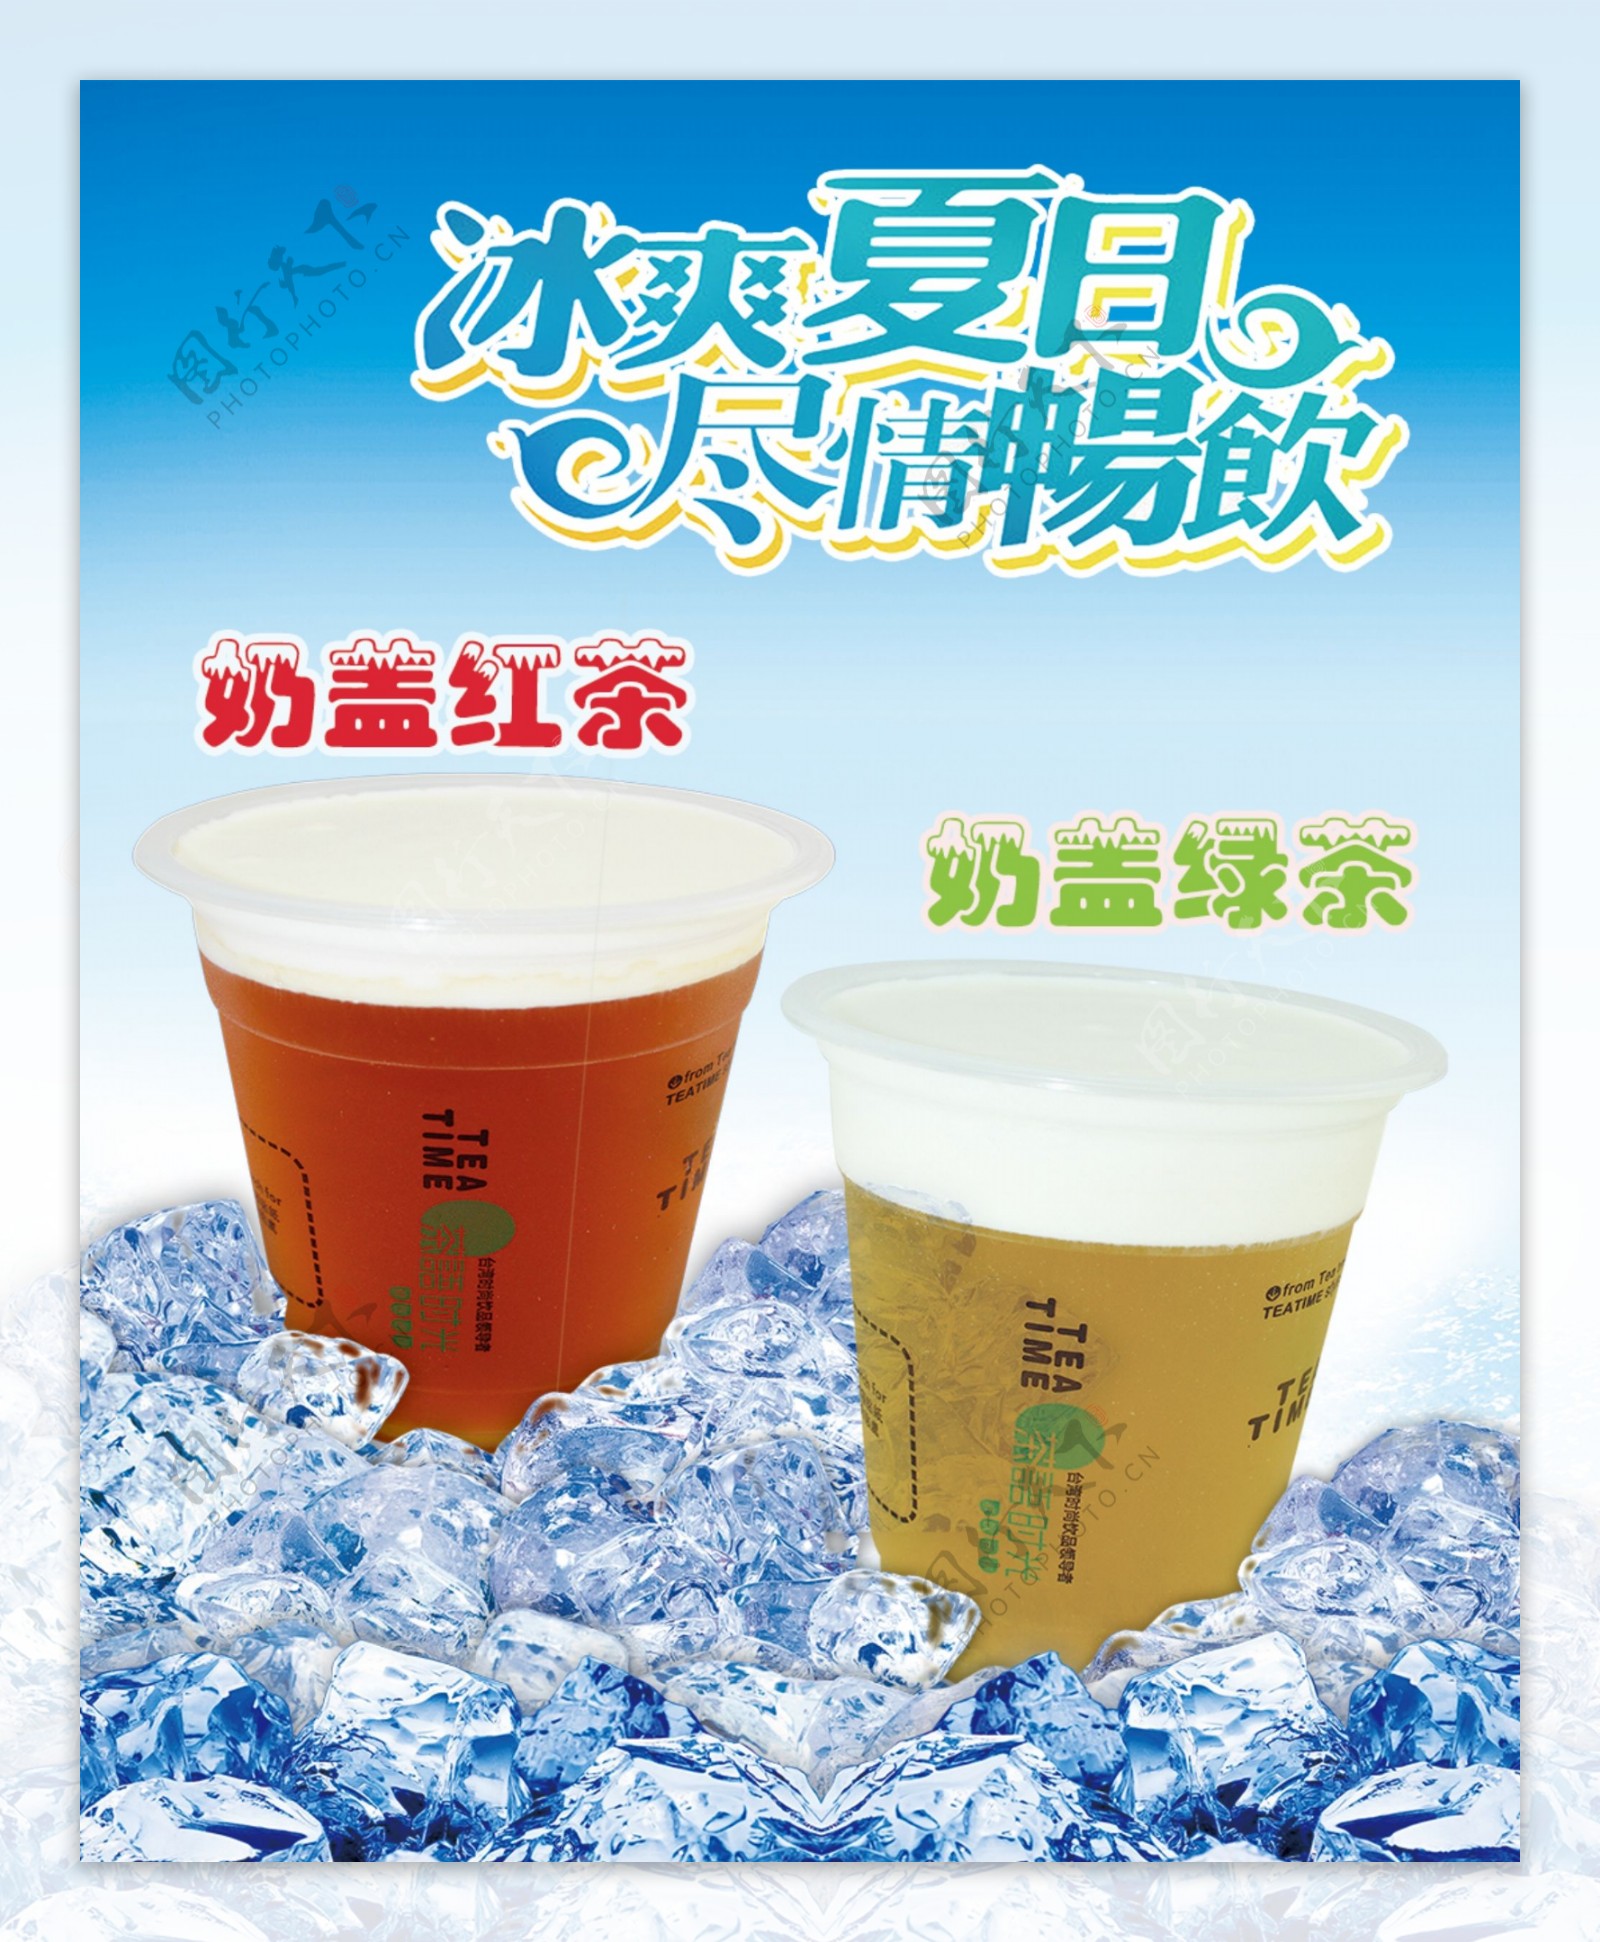 奶盖红茶绿茶广告